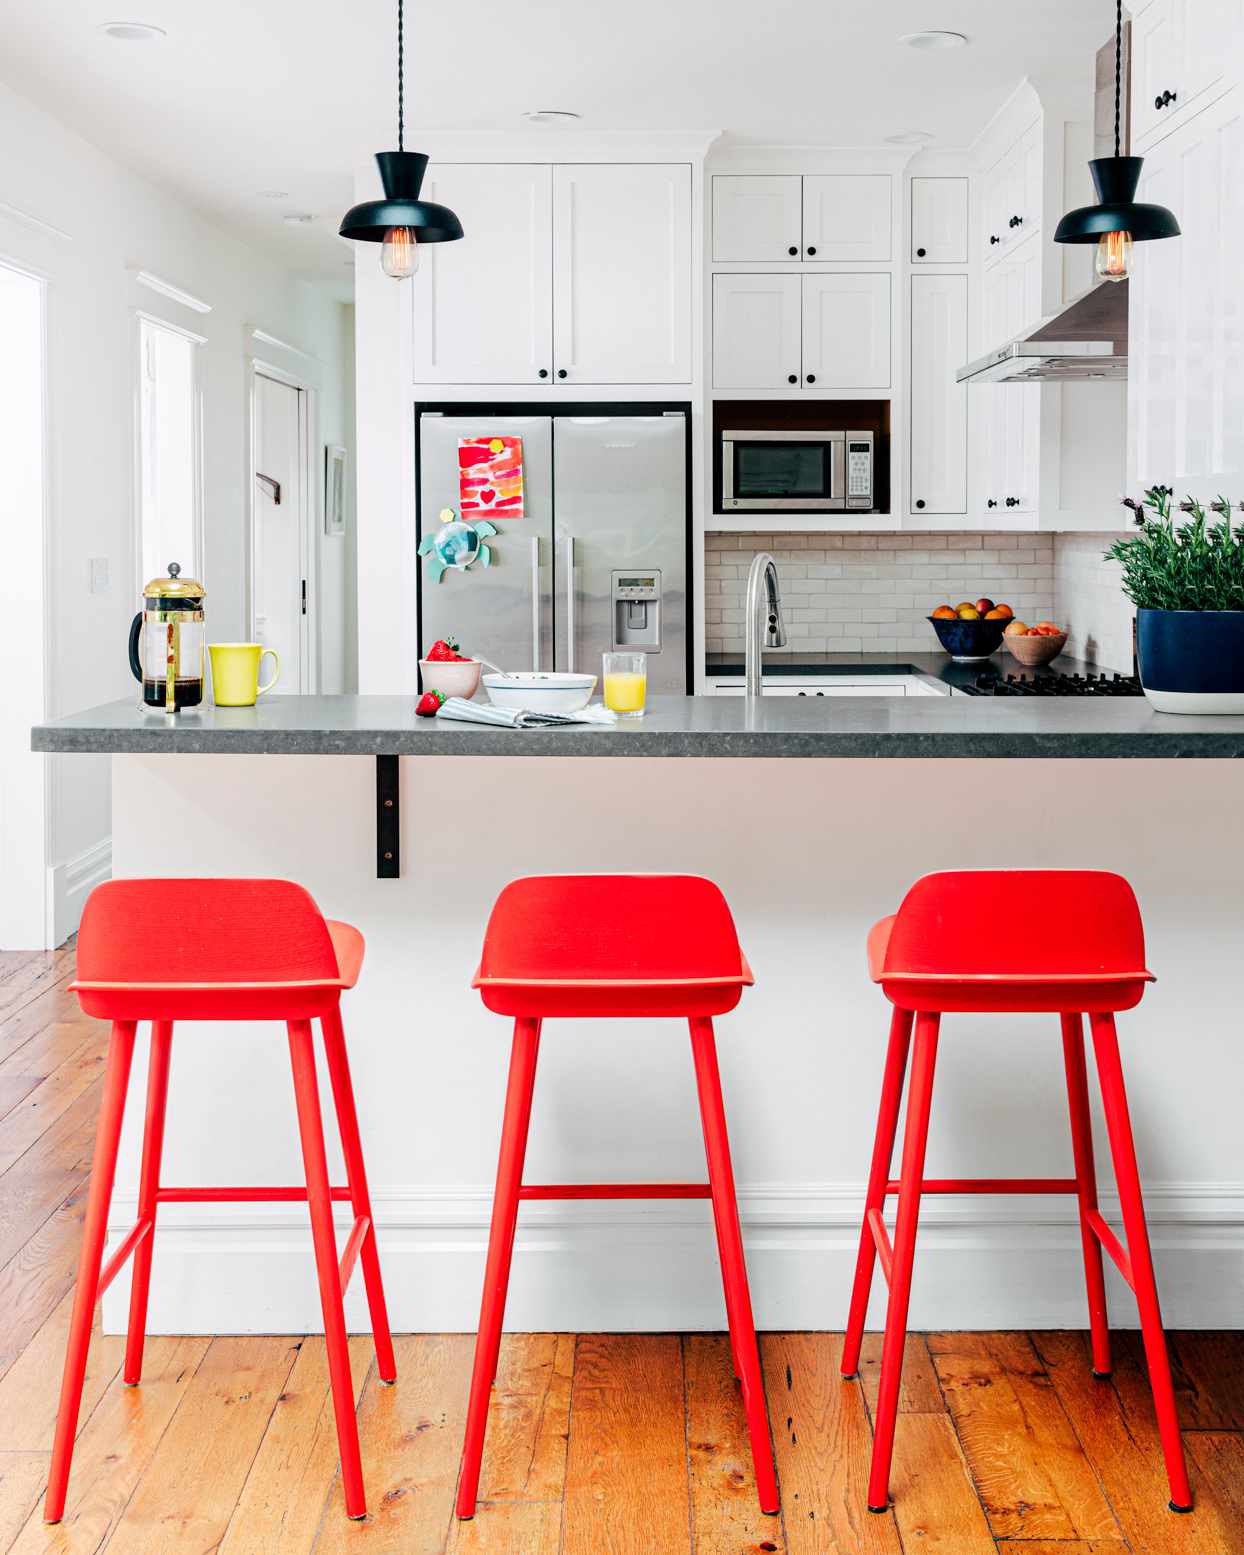 red bar stools at kitchen counter